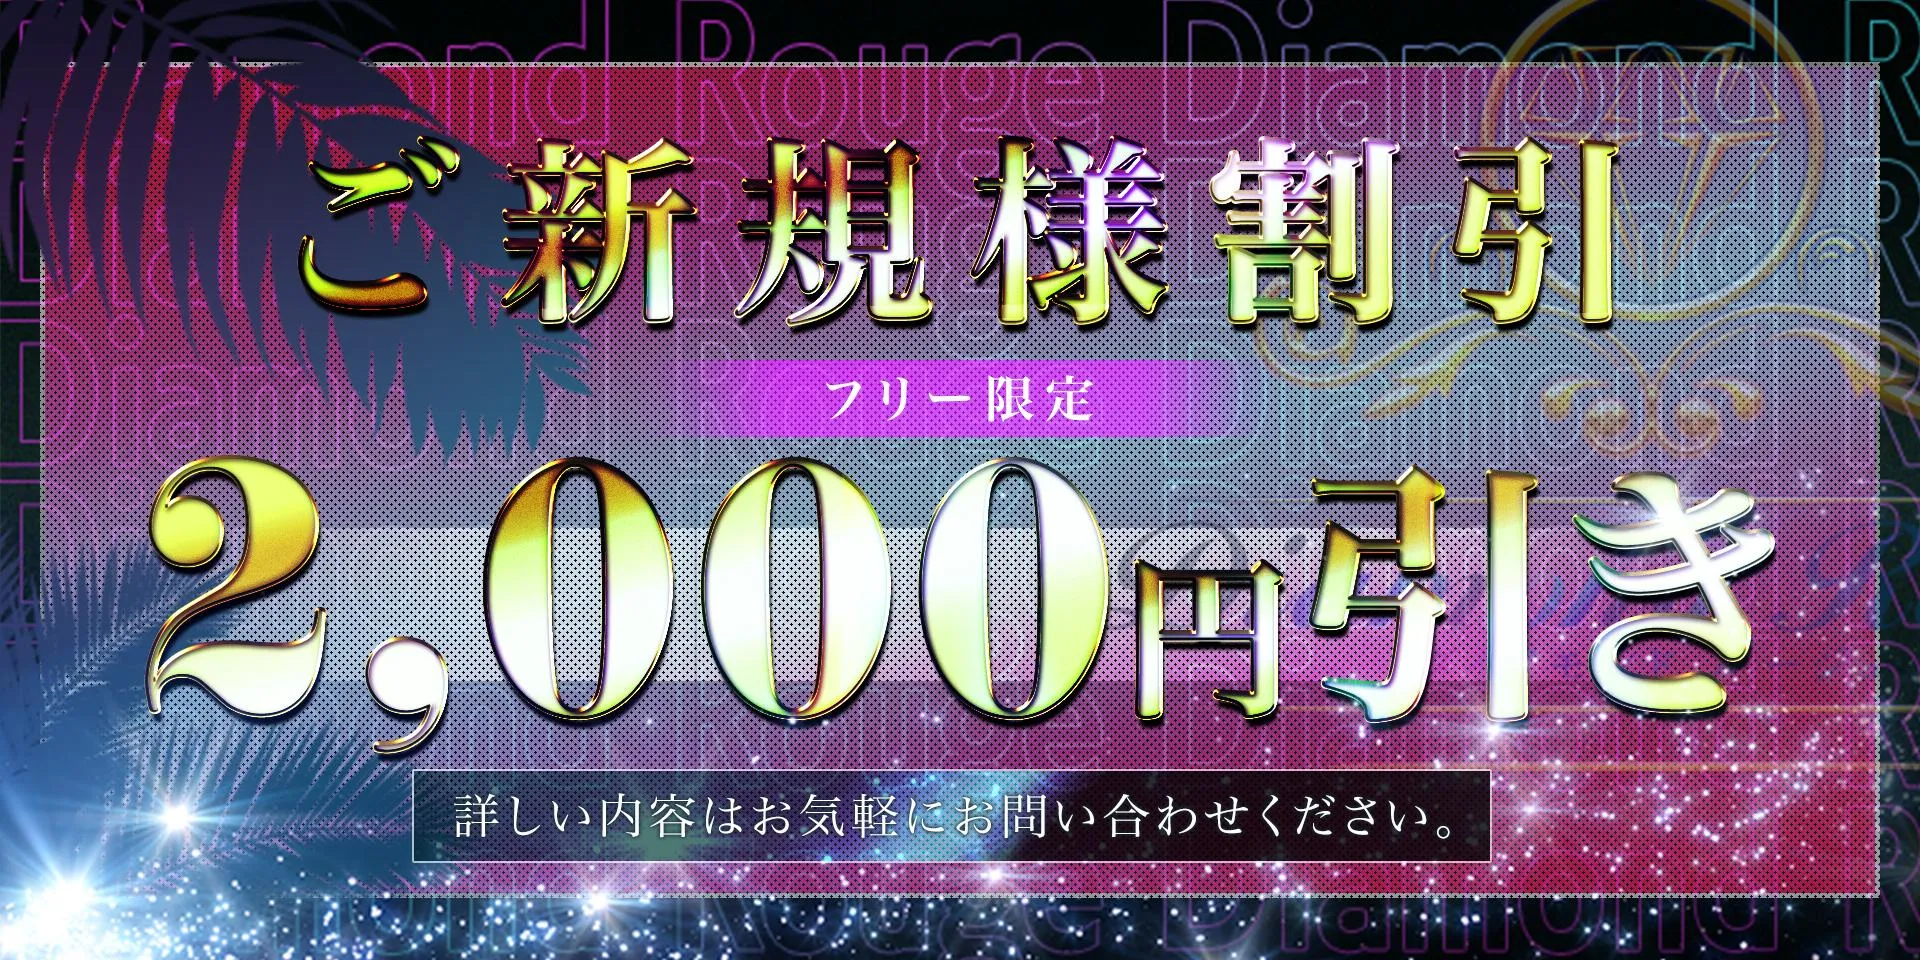 新規割2,000円割引